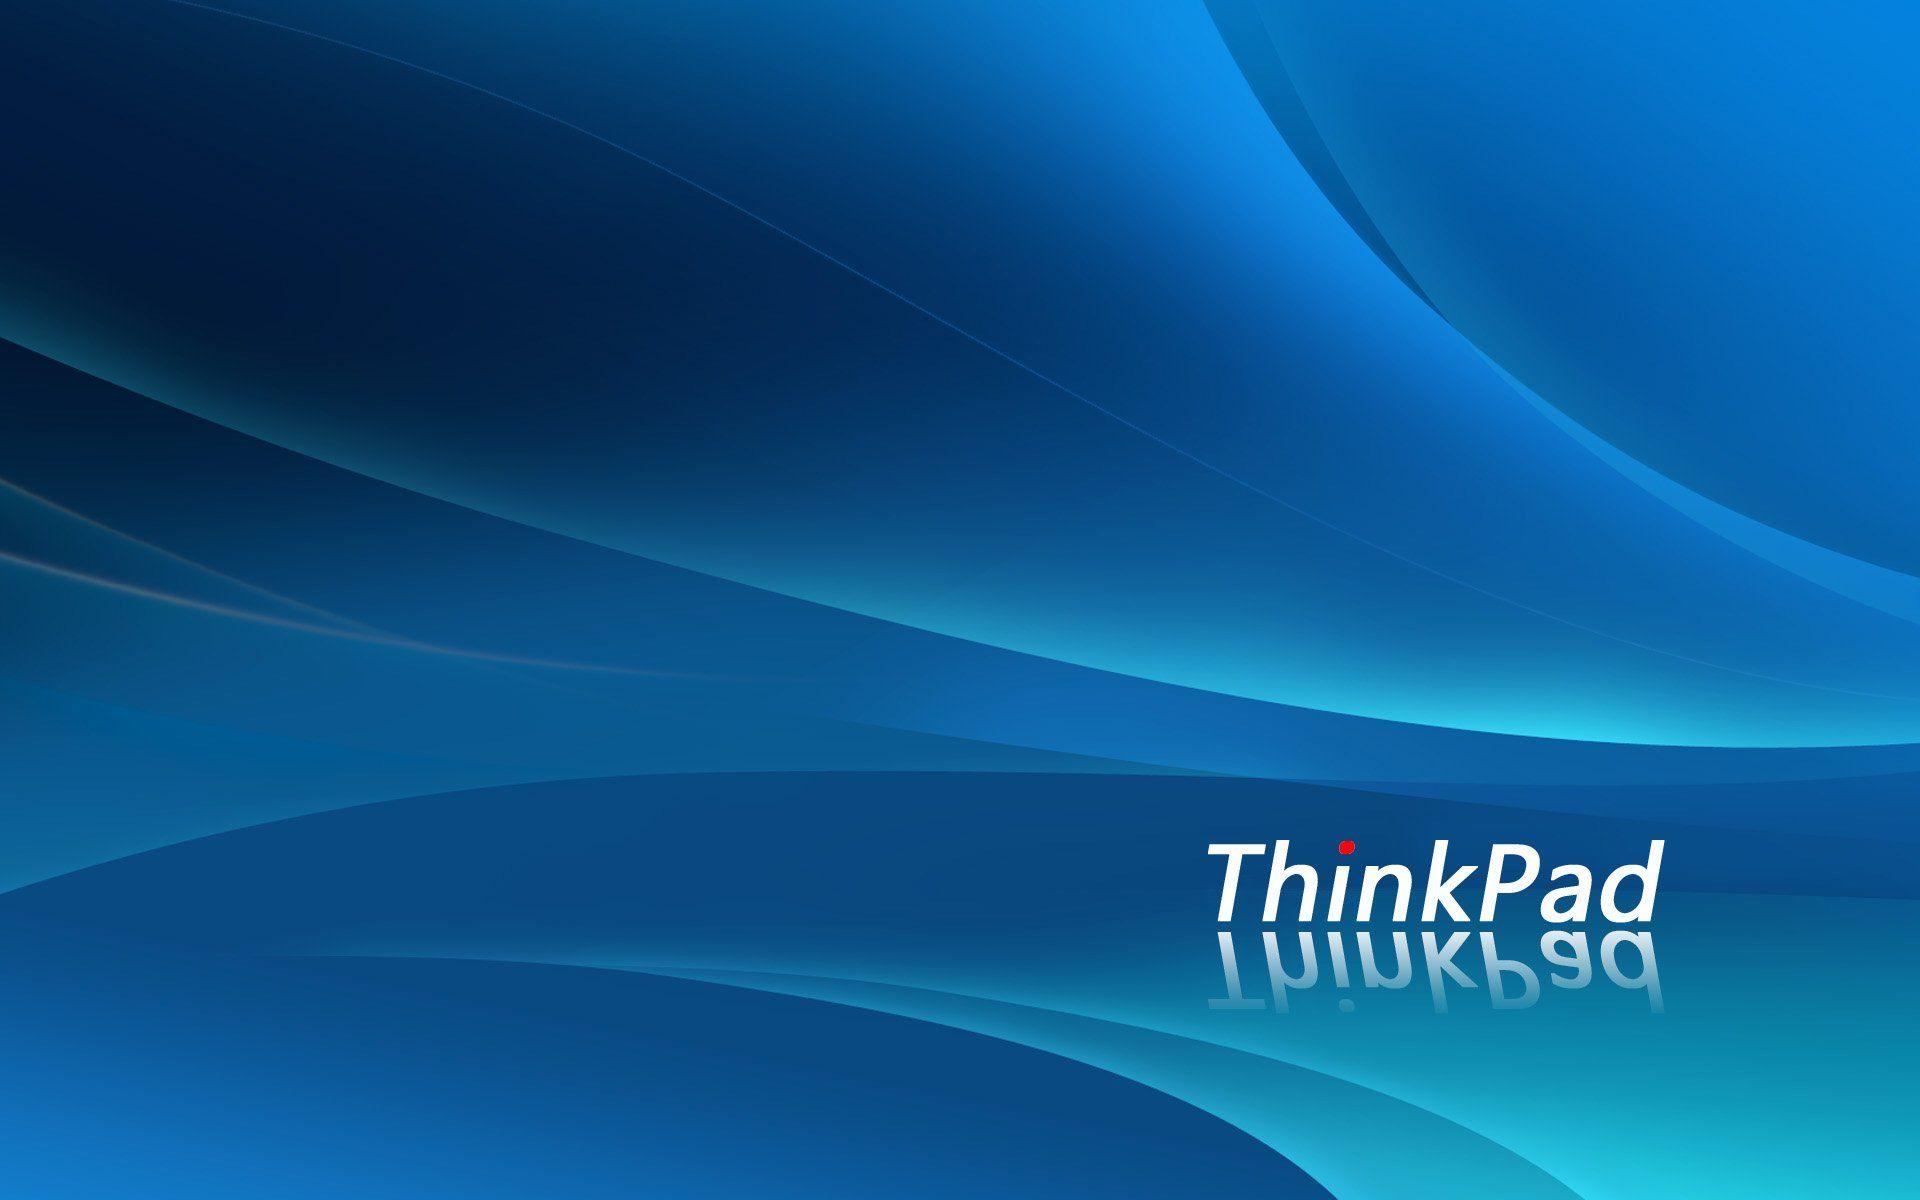 Ibm Thinkpad Wallpaper 1024x768 (119.02 KB)